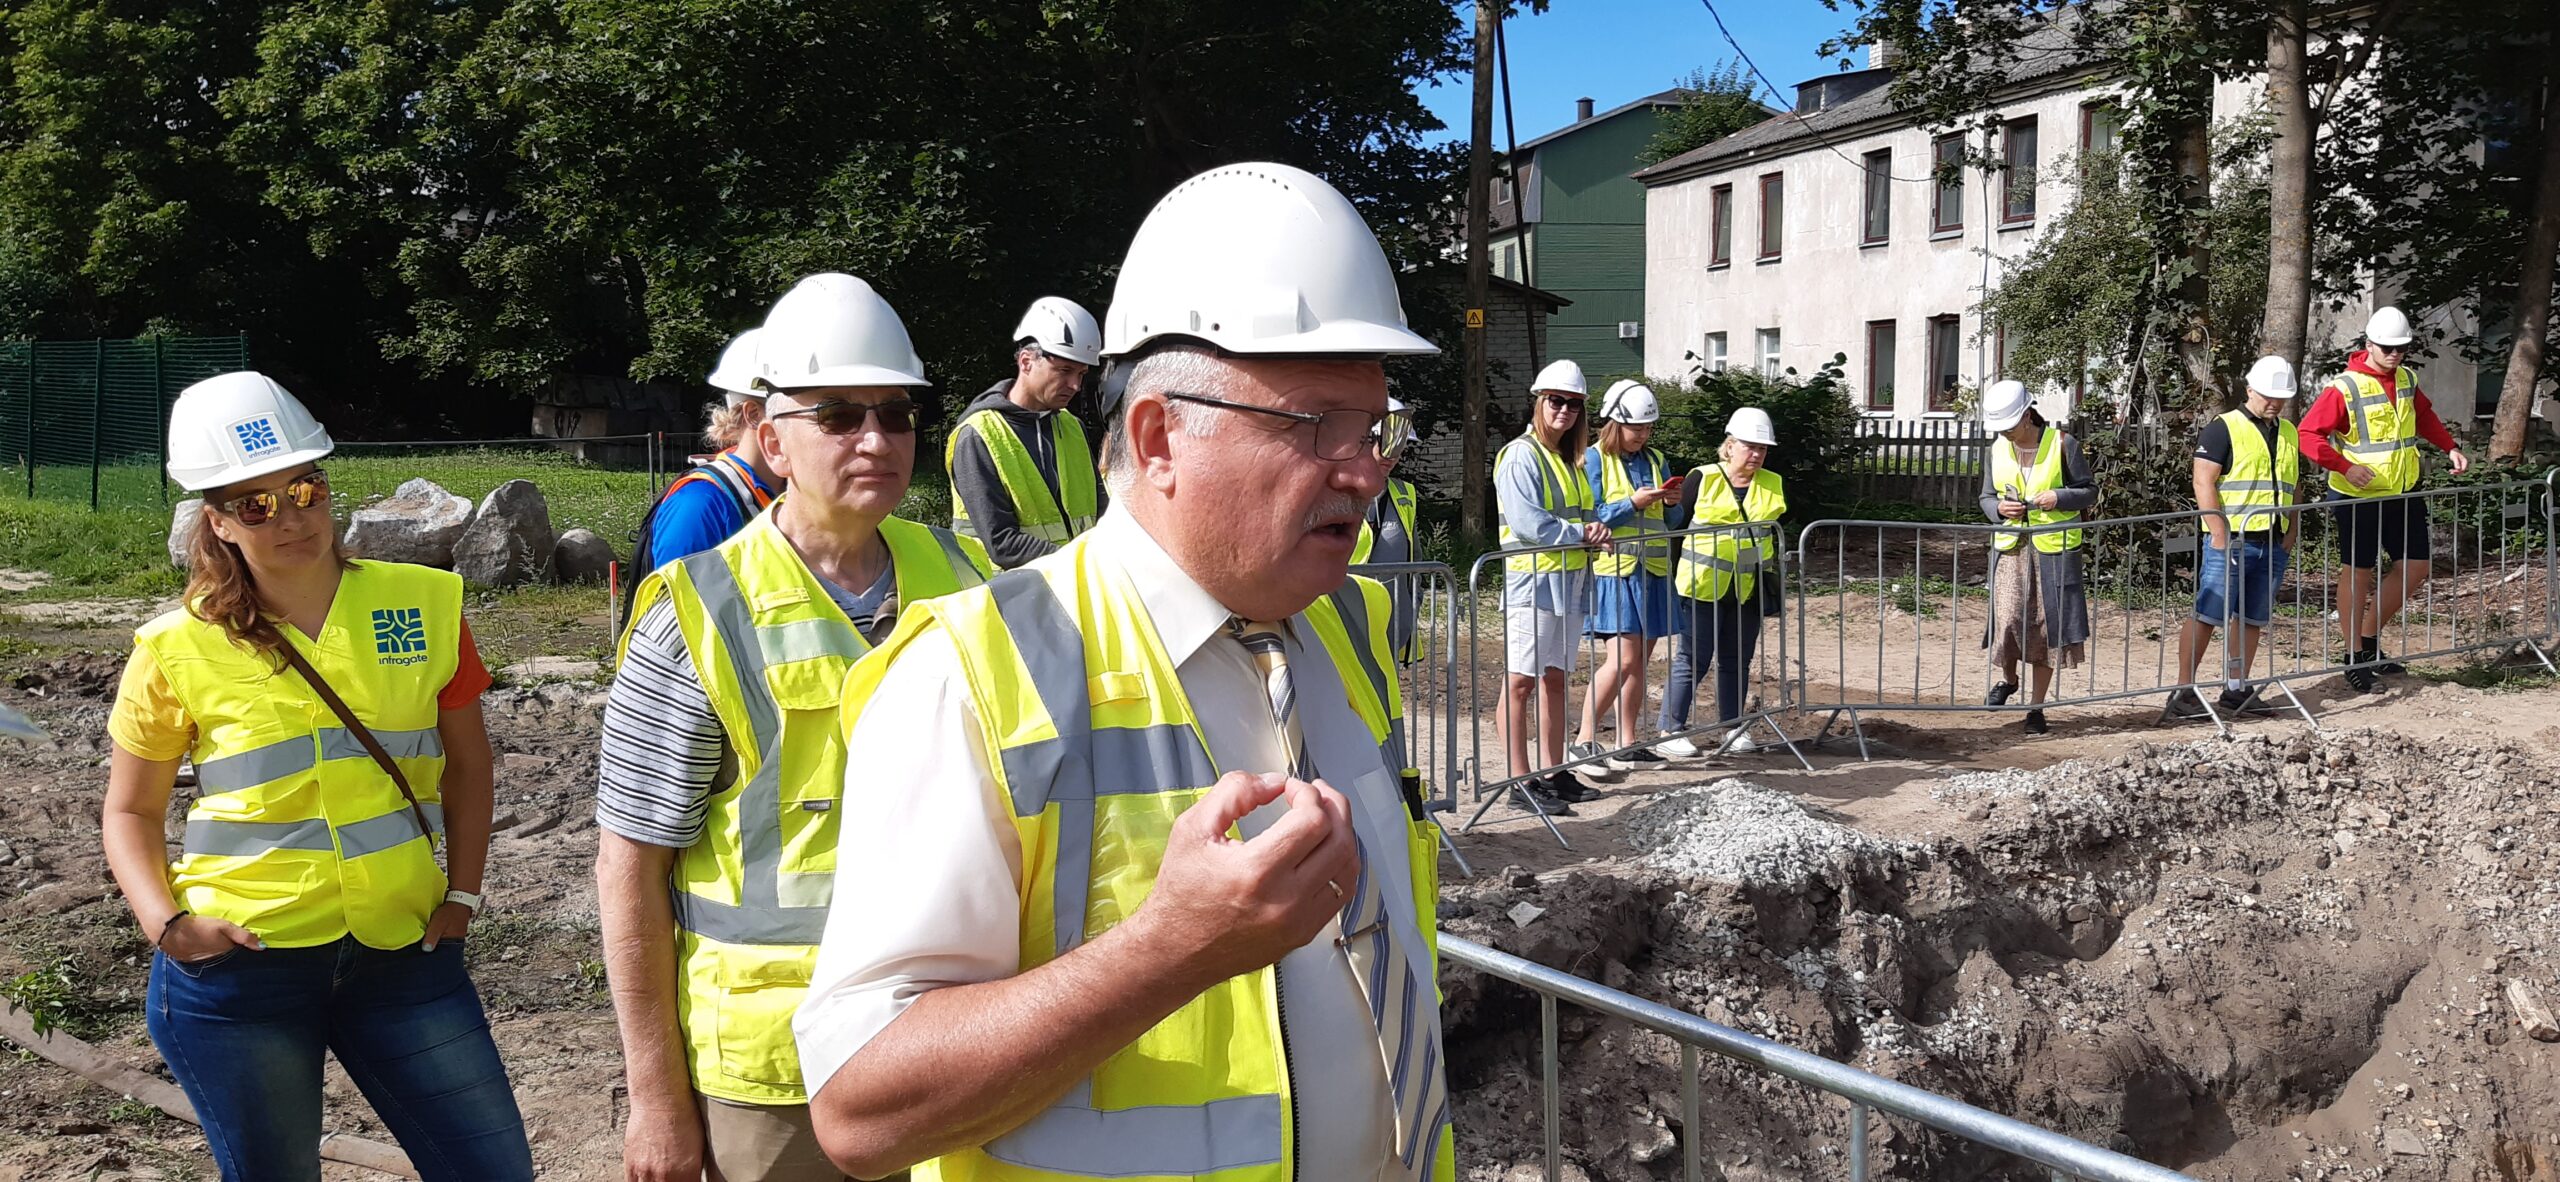 Uudse survetorustiku renoveerimise tehnoloogia Primus Line tutvustus Pärnus